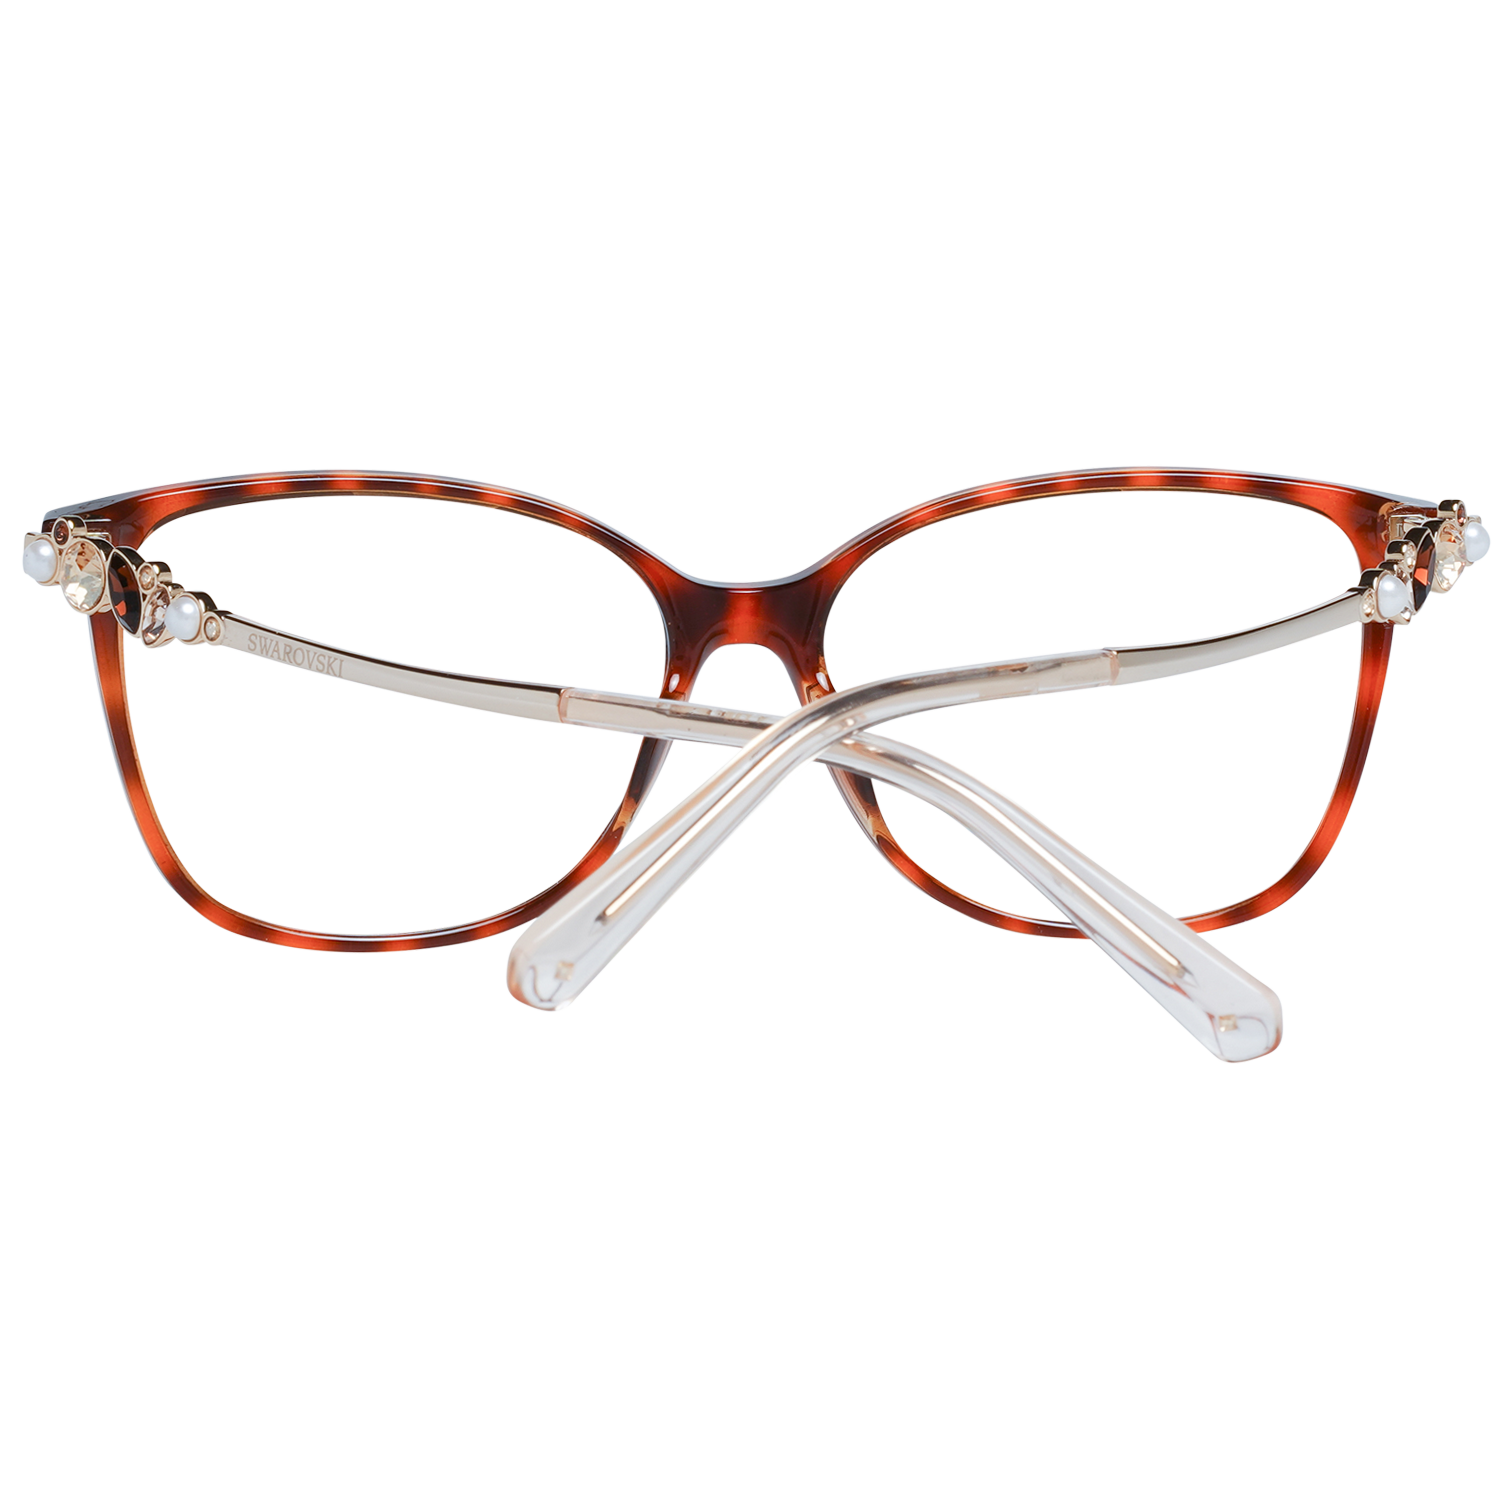 Swarovski Frames Swarovski Women Glasses Optical Frame SK5367 056 55 Eyeglasses Eyewear UK USA Australia 